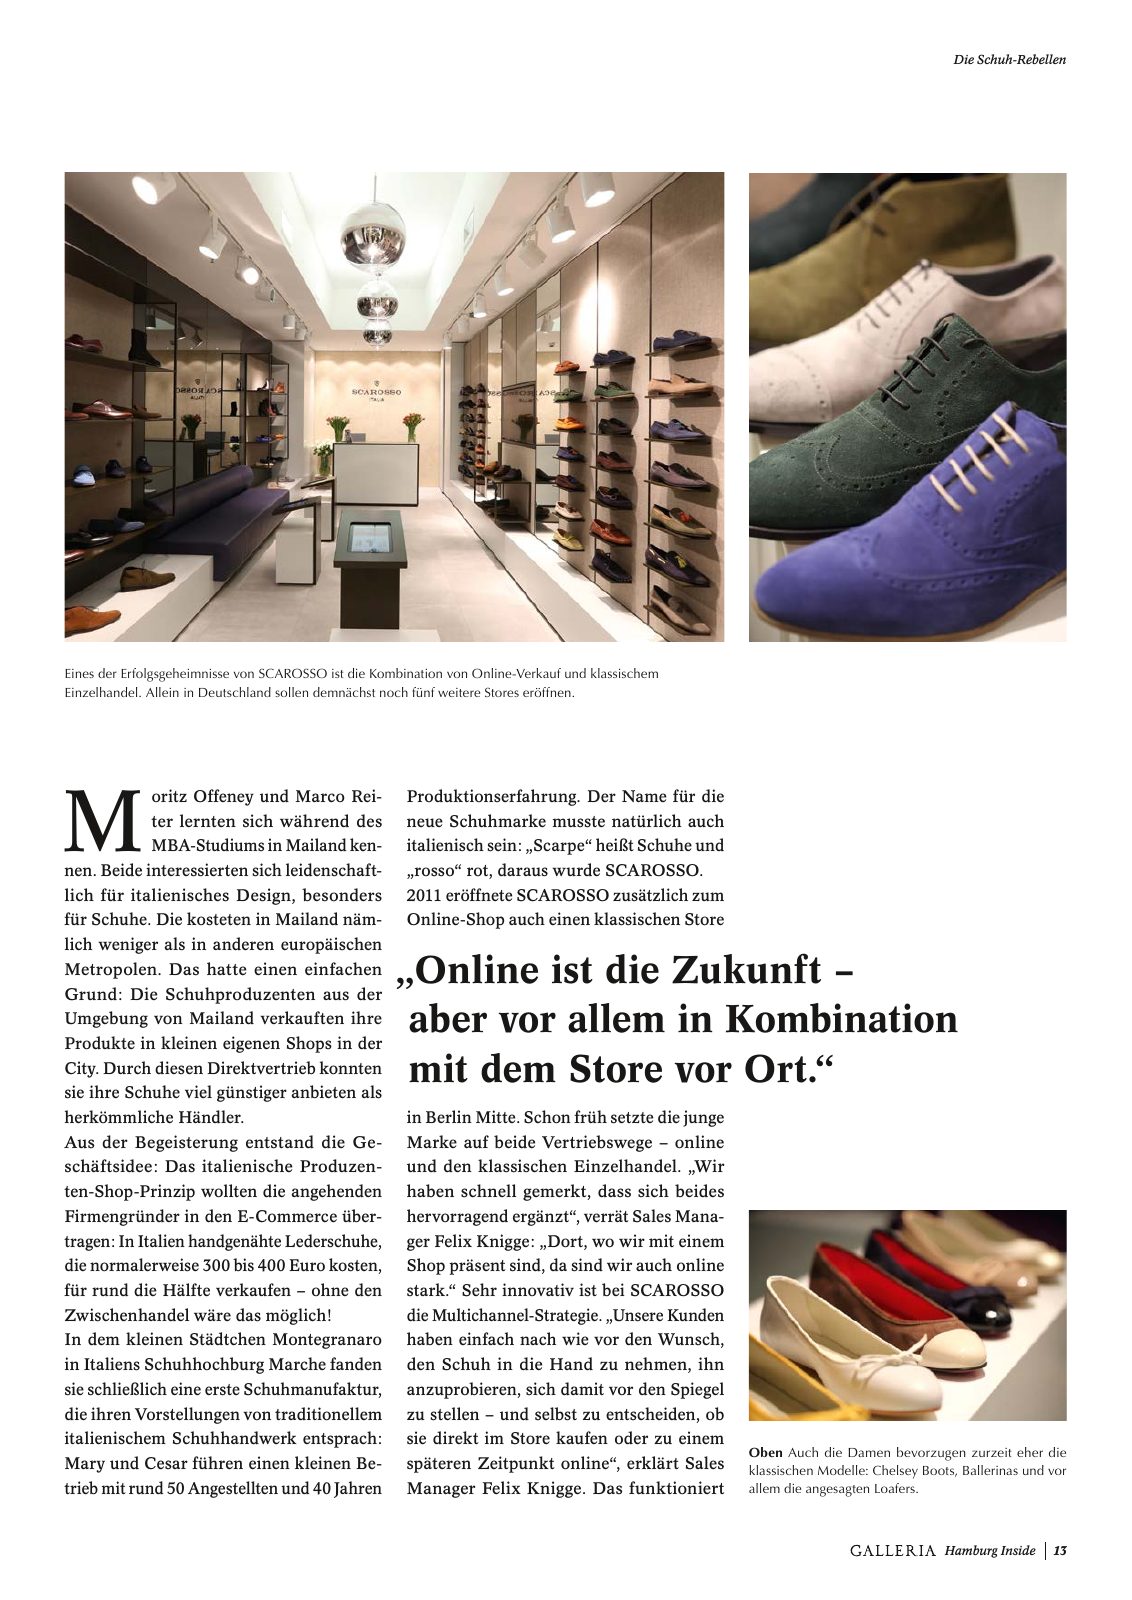 Vorschau GALLERIA Magazin Hamburg Inside 1 Seite 13